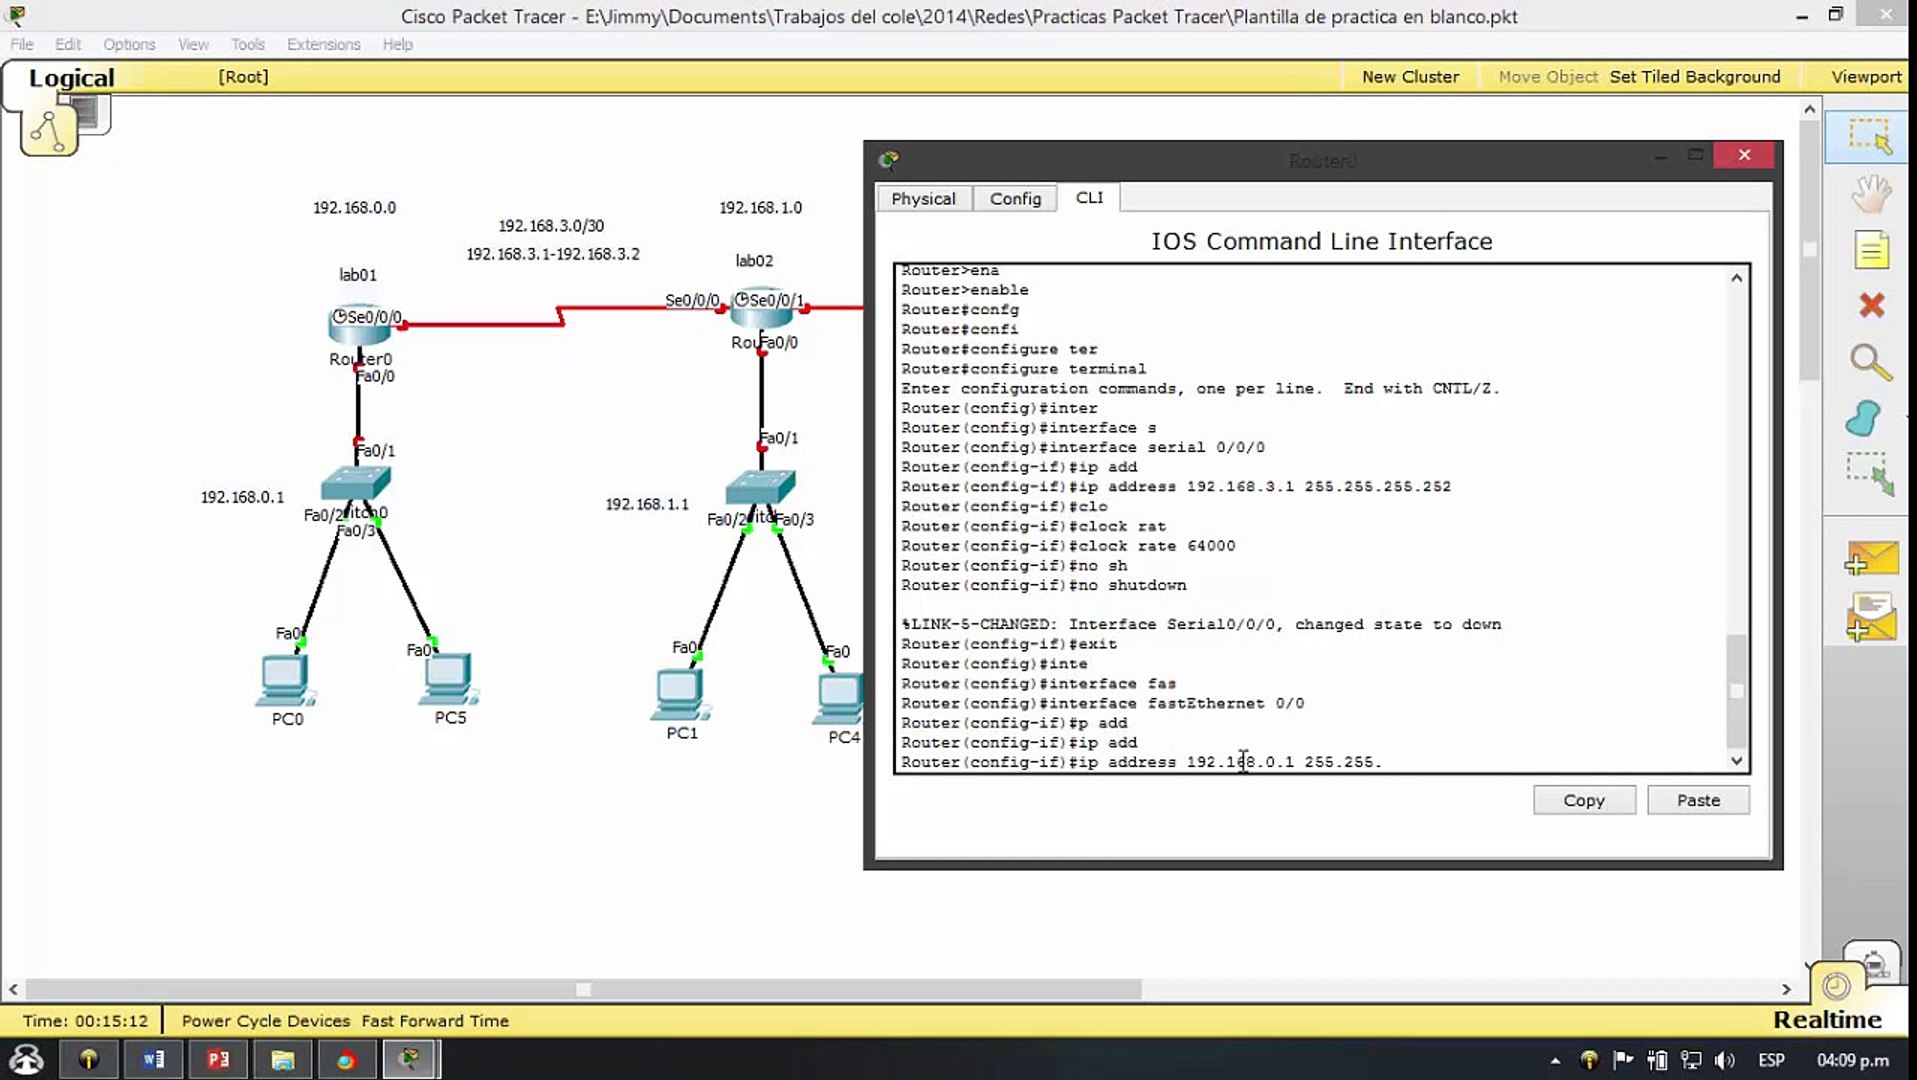 Configurar las interfaces de un router en Cisco Packet Tracer | Paso a Paso  | Tutorial 2014 - video Dailymotion